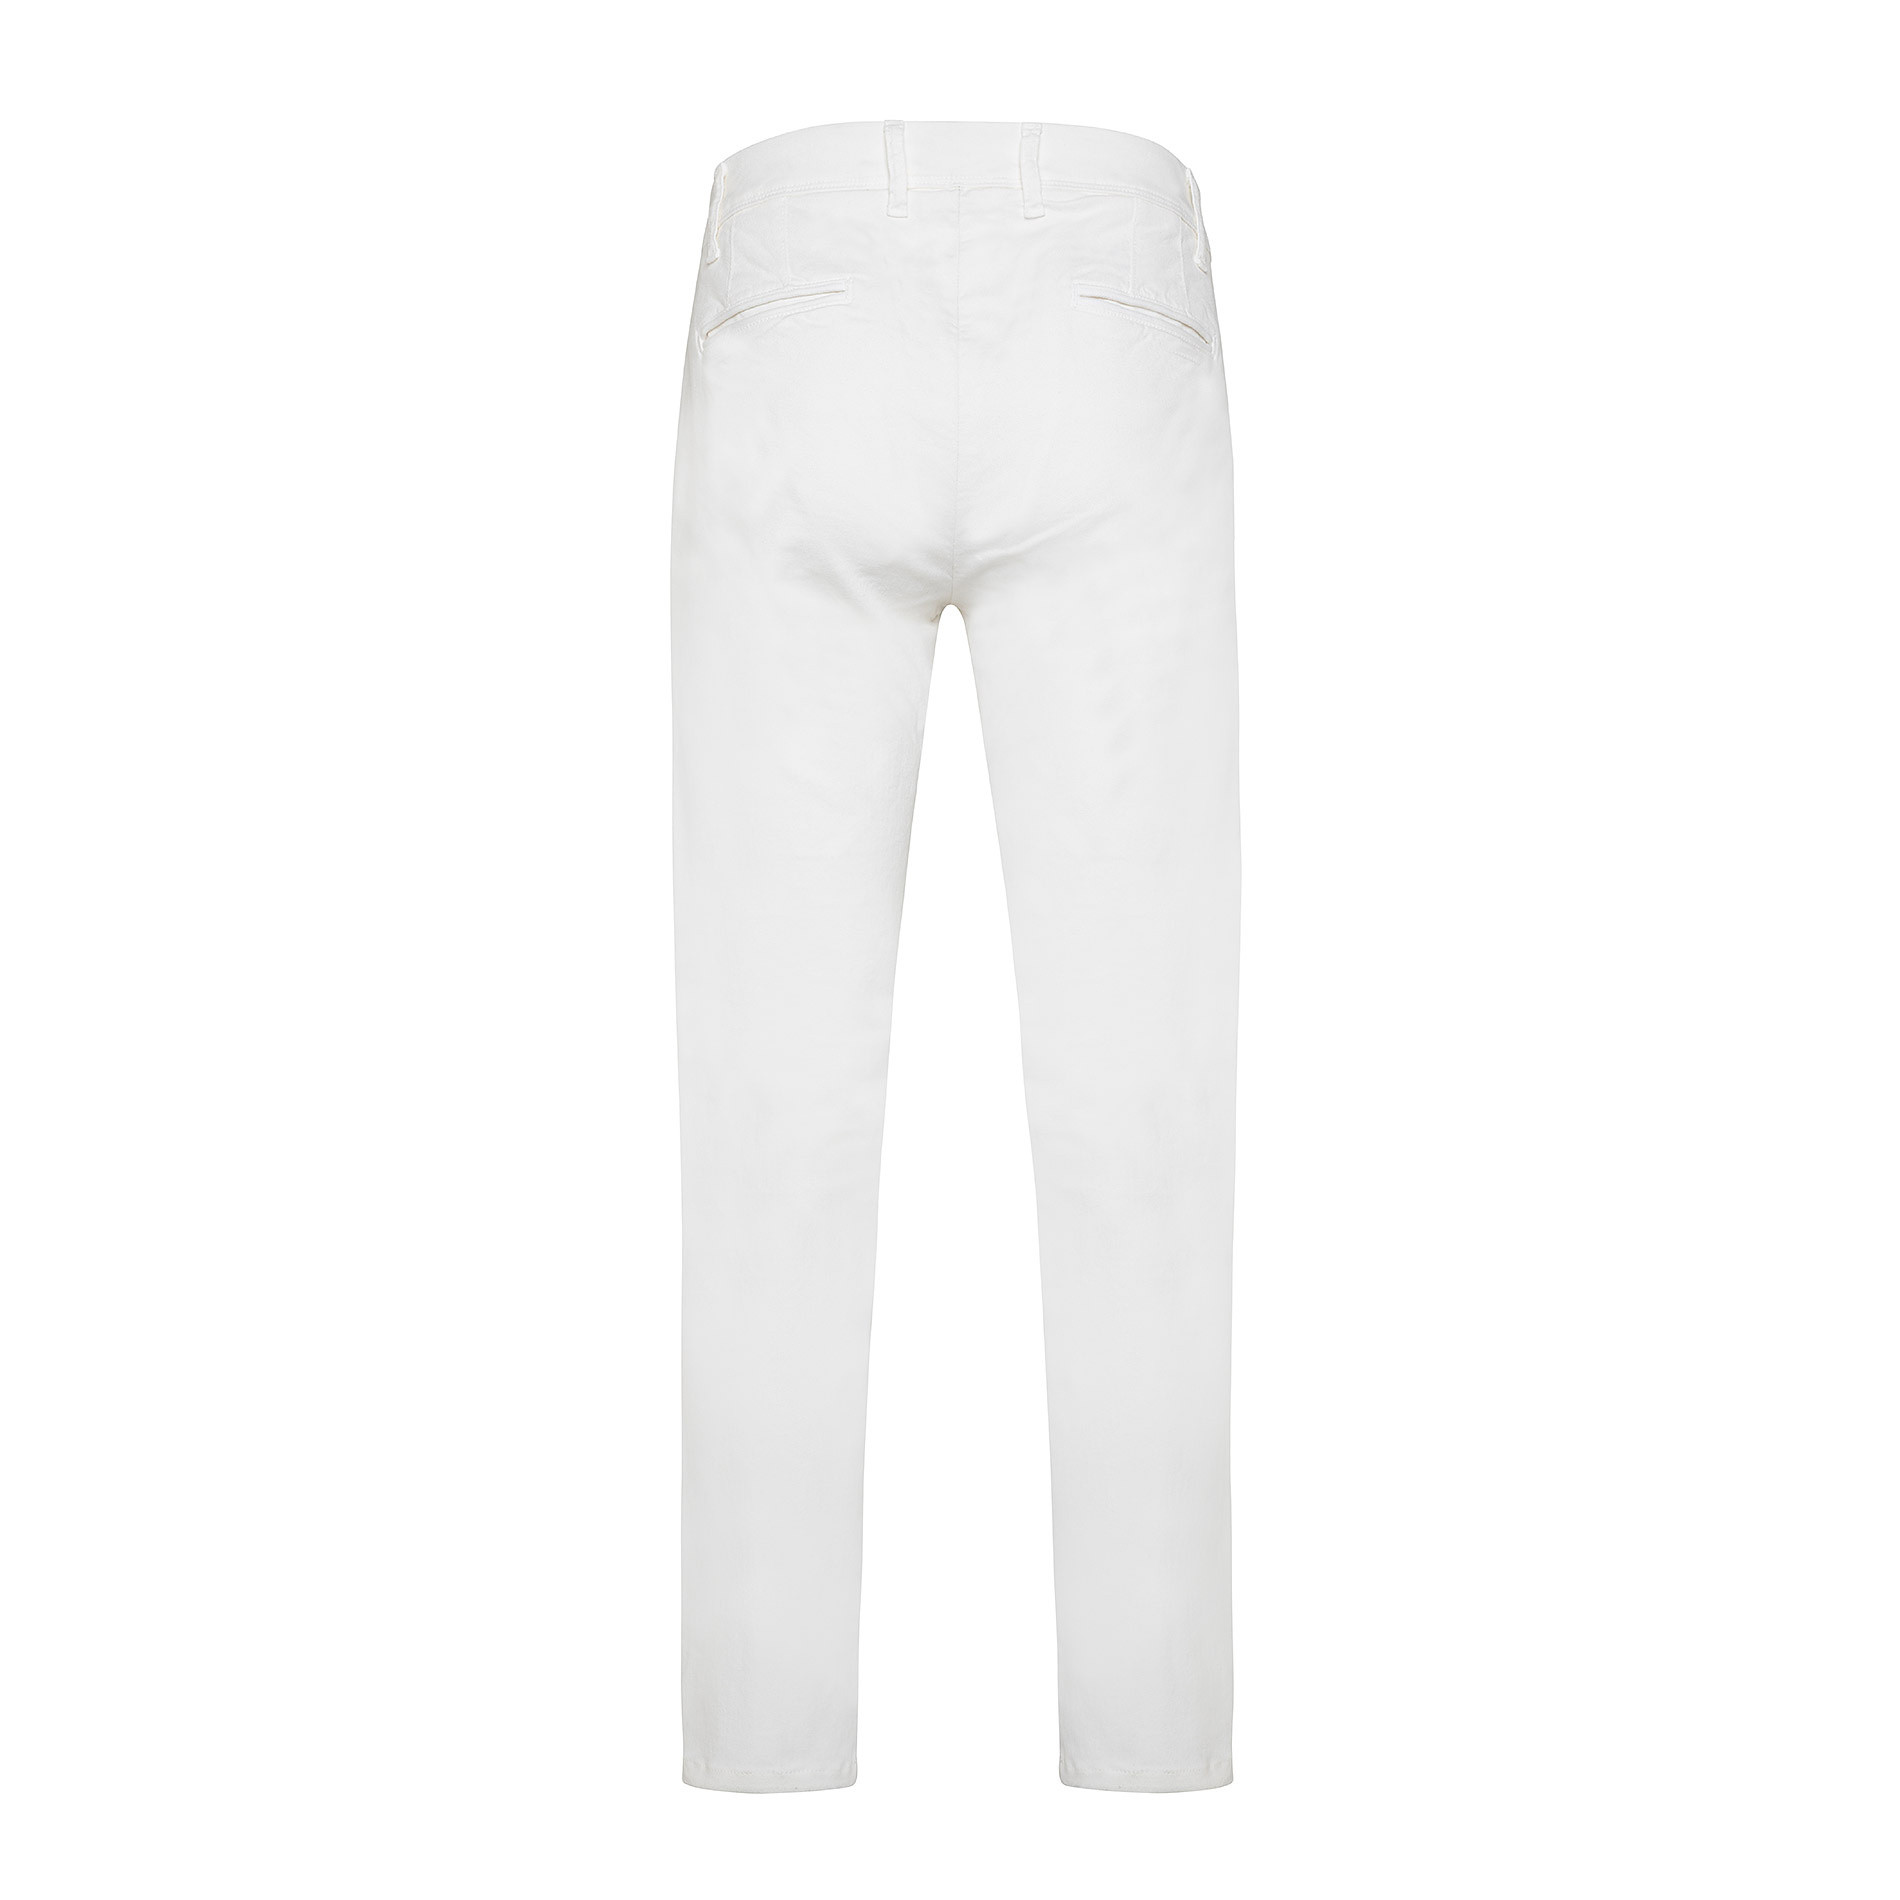 Pantalone chino gabardina stretch JCT, Bianco, large